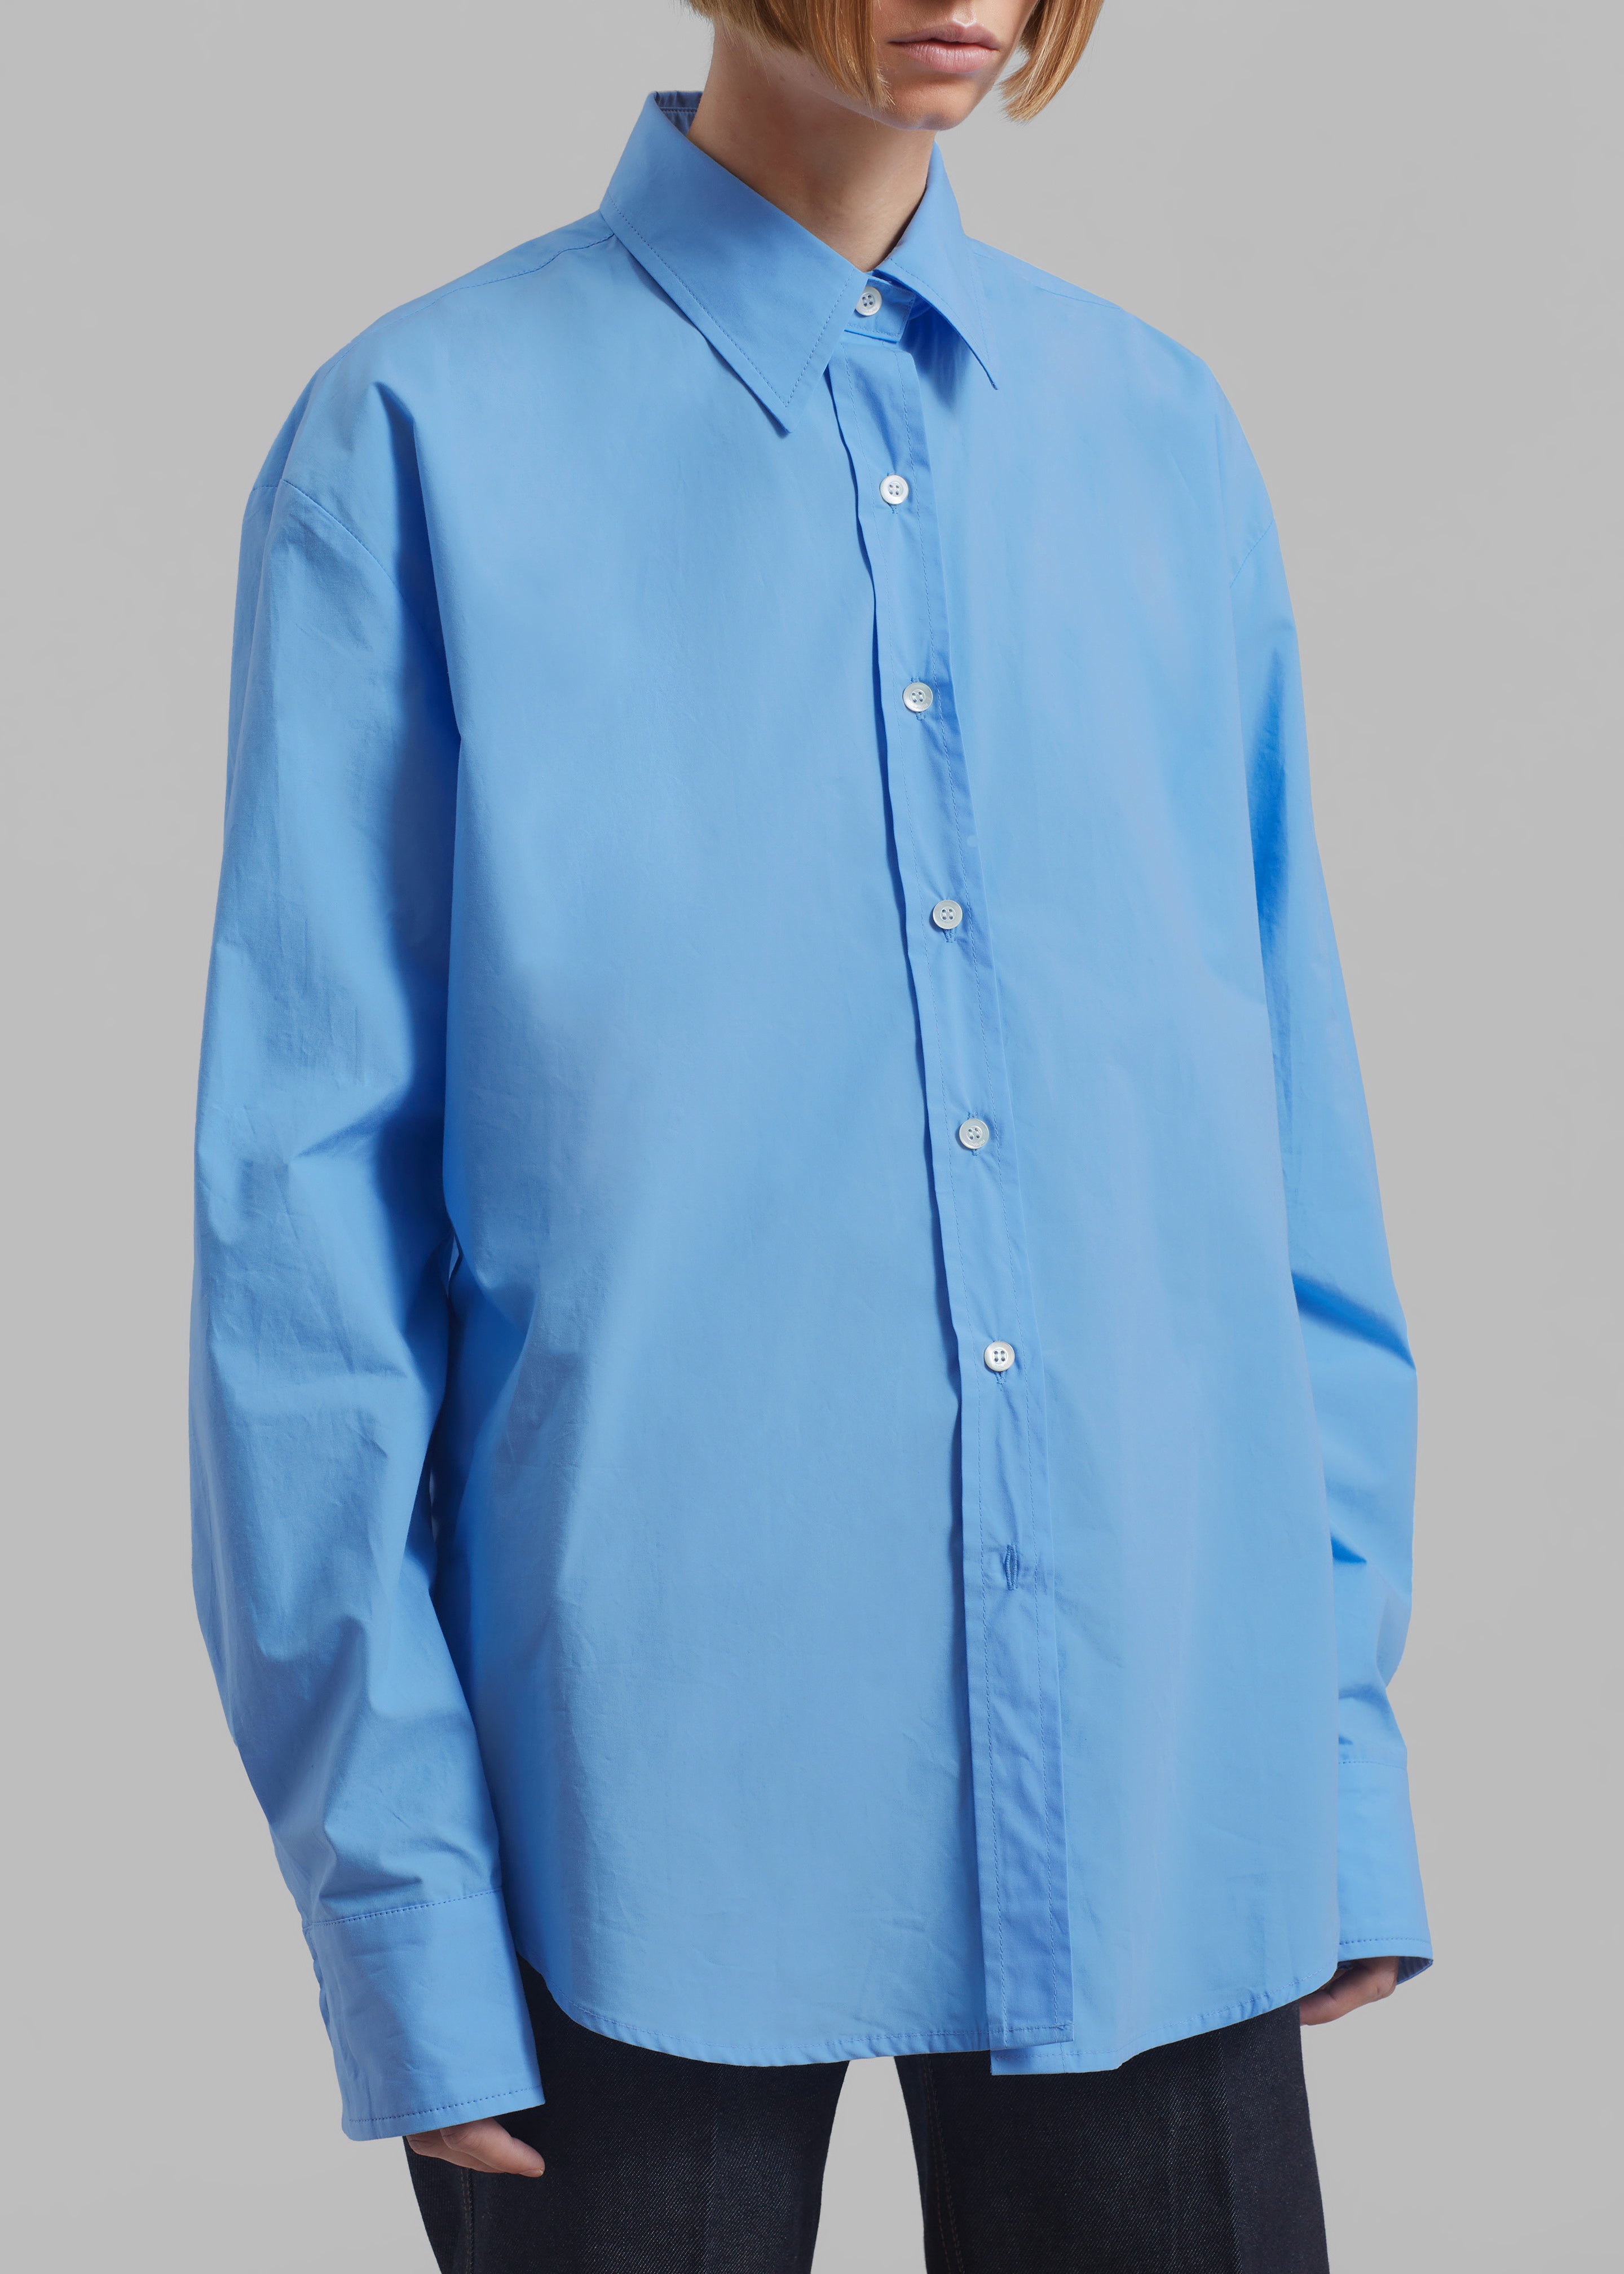 Neil Button Up Shirt - Blue - 5